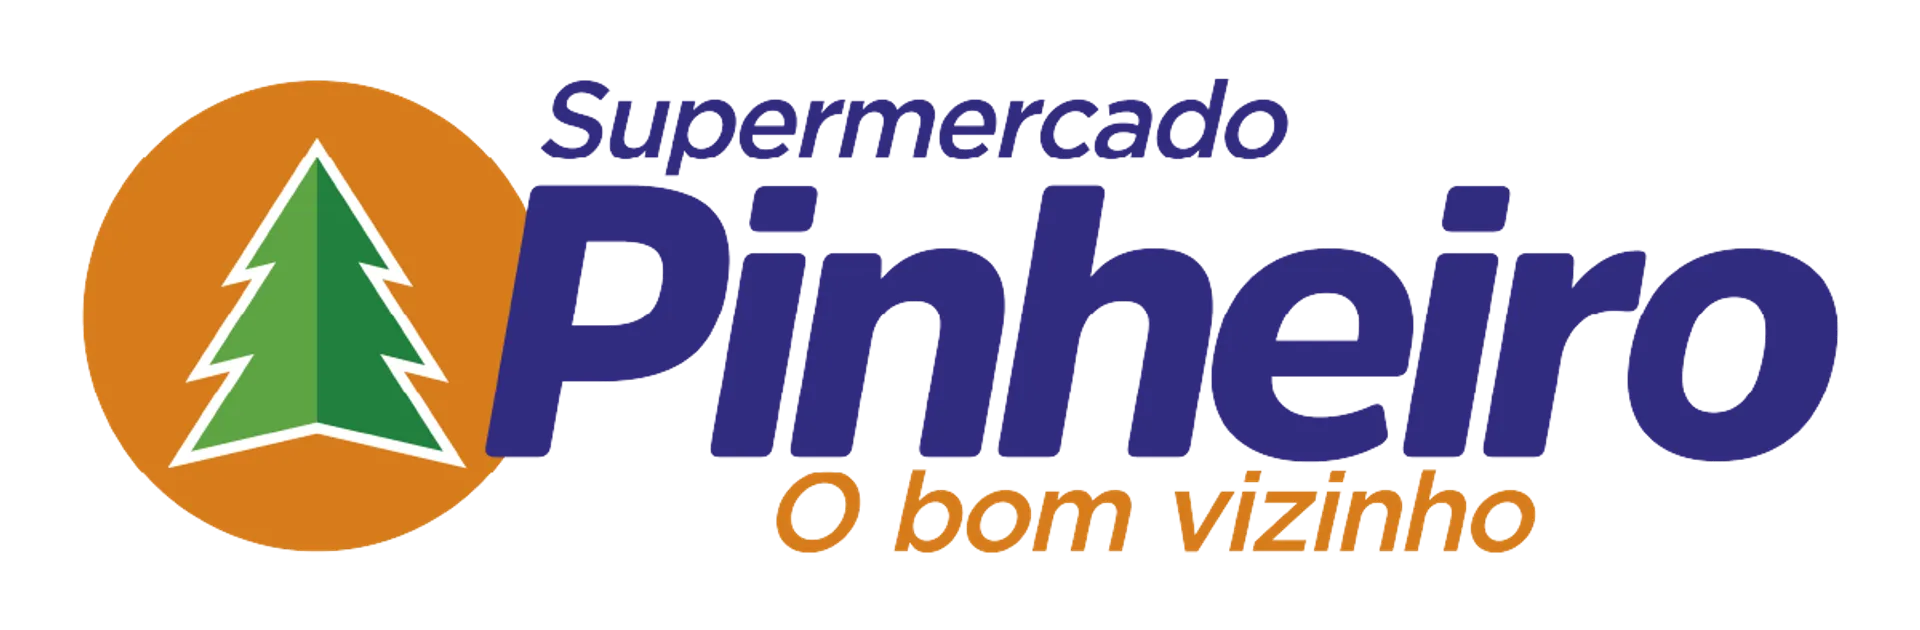 PINHEIRO SUPERMERCADO logo